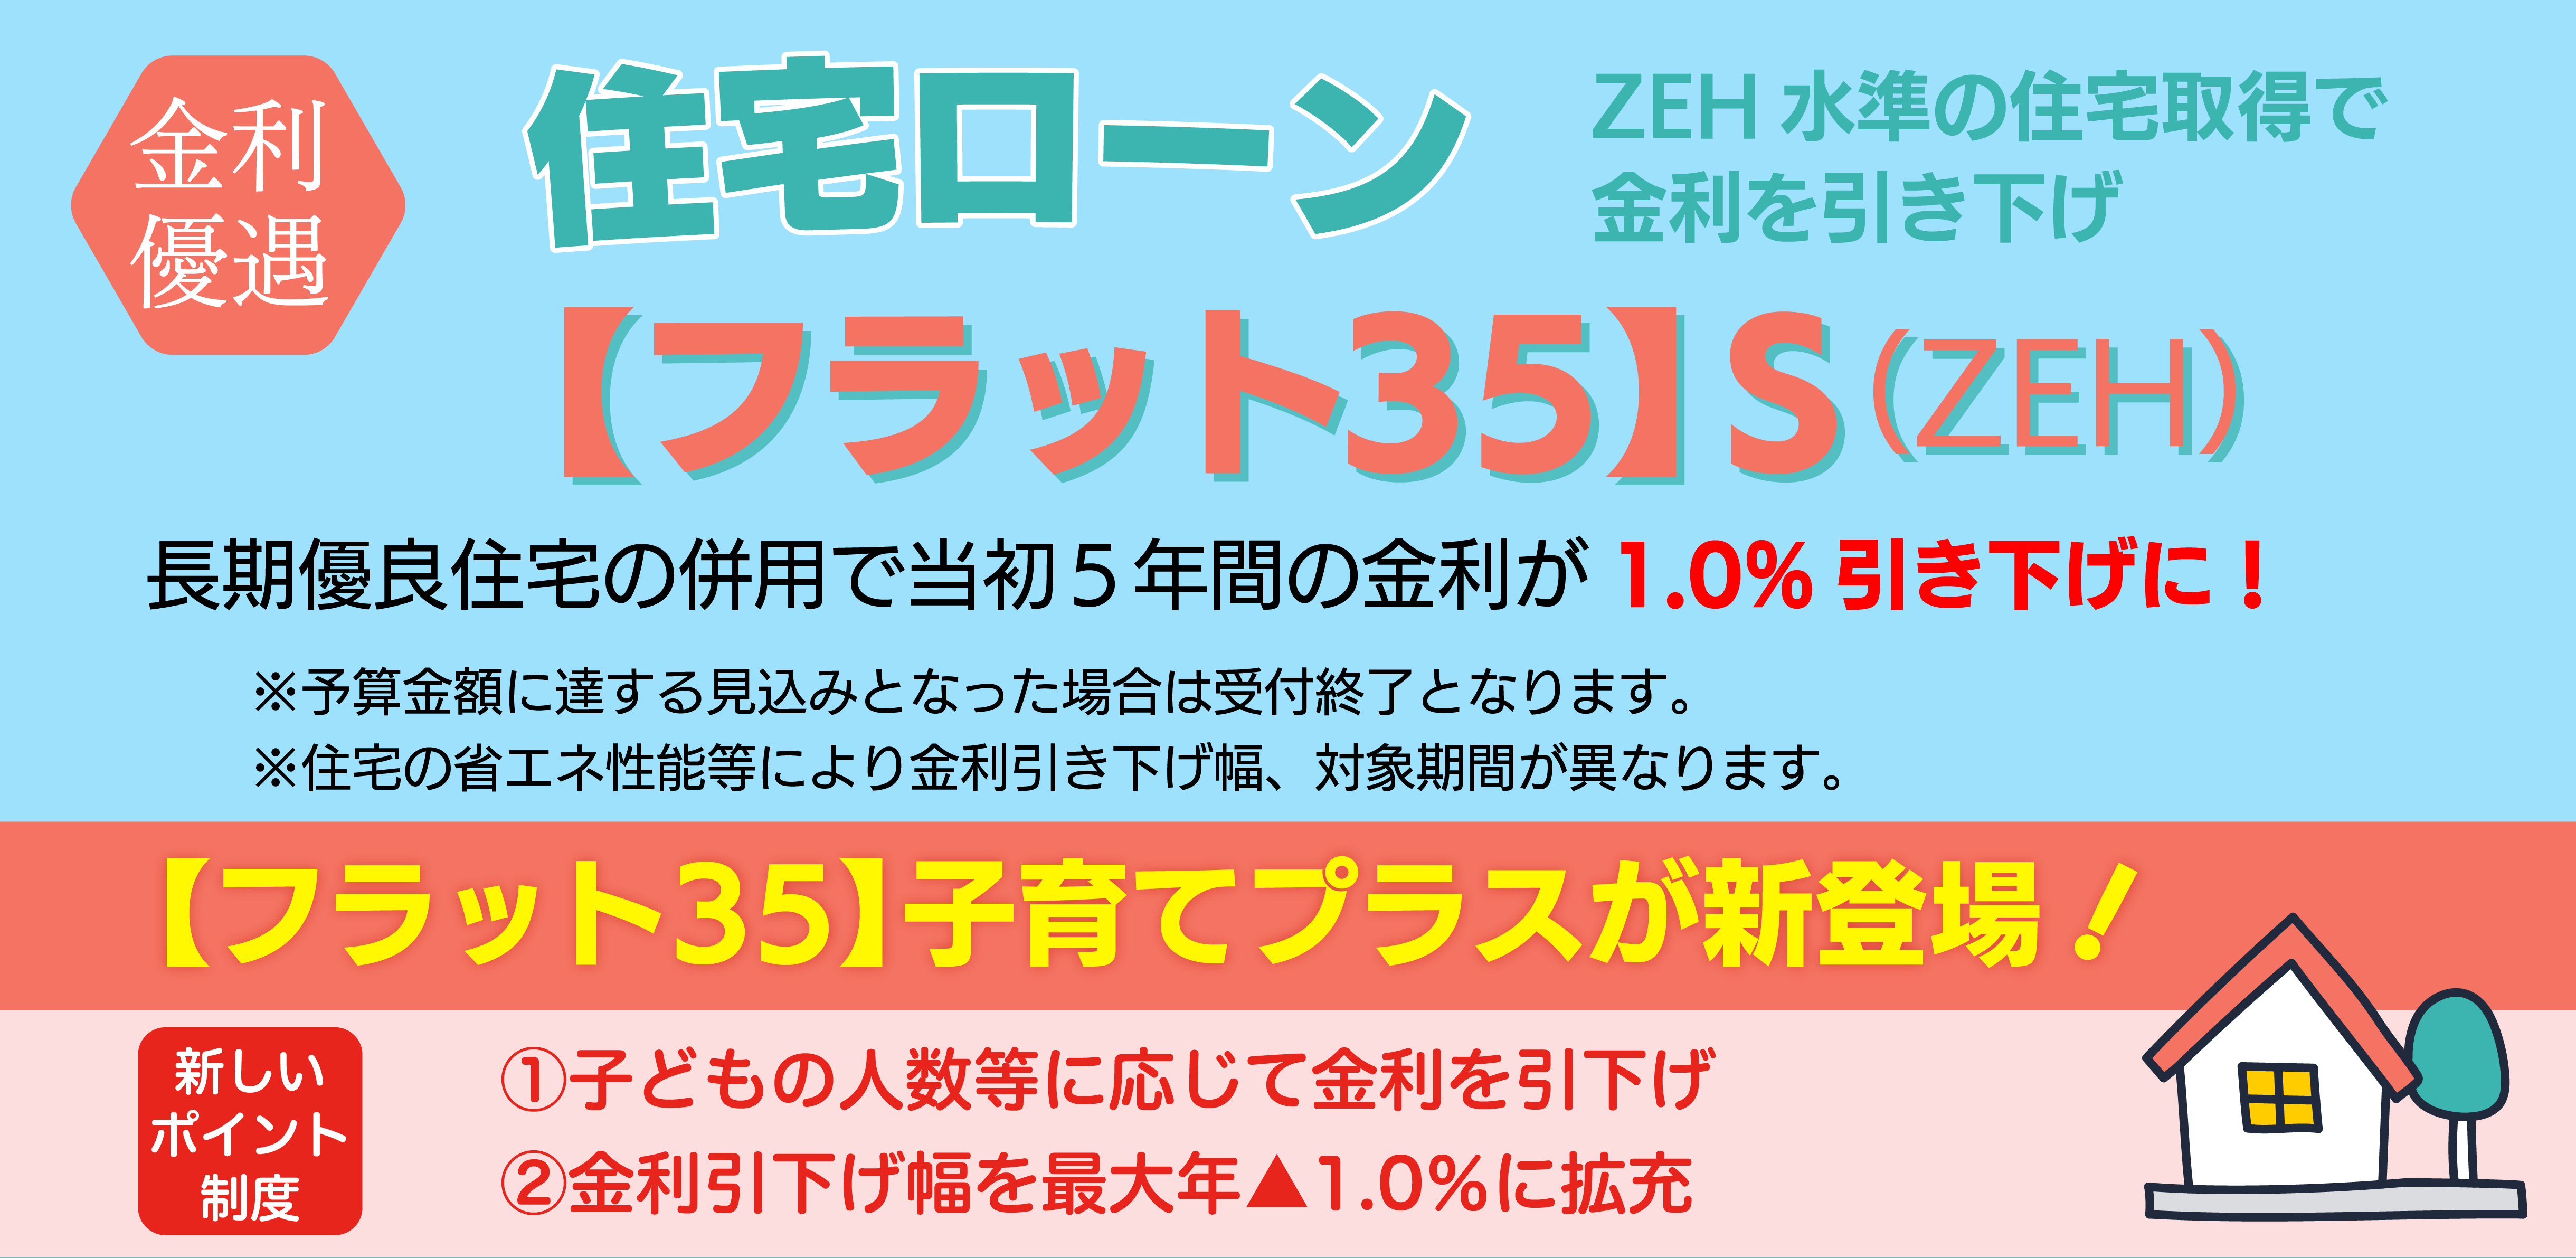 金利優遇 住宅ローン 【フラット35】S(ZEH)